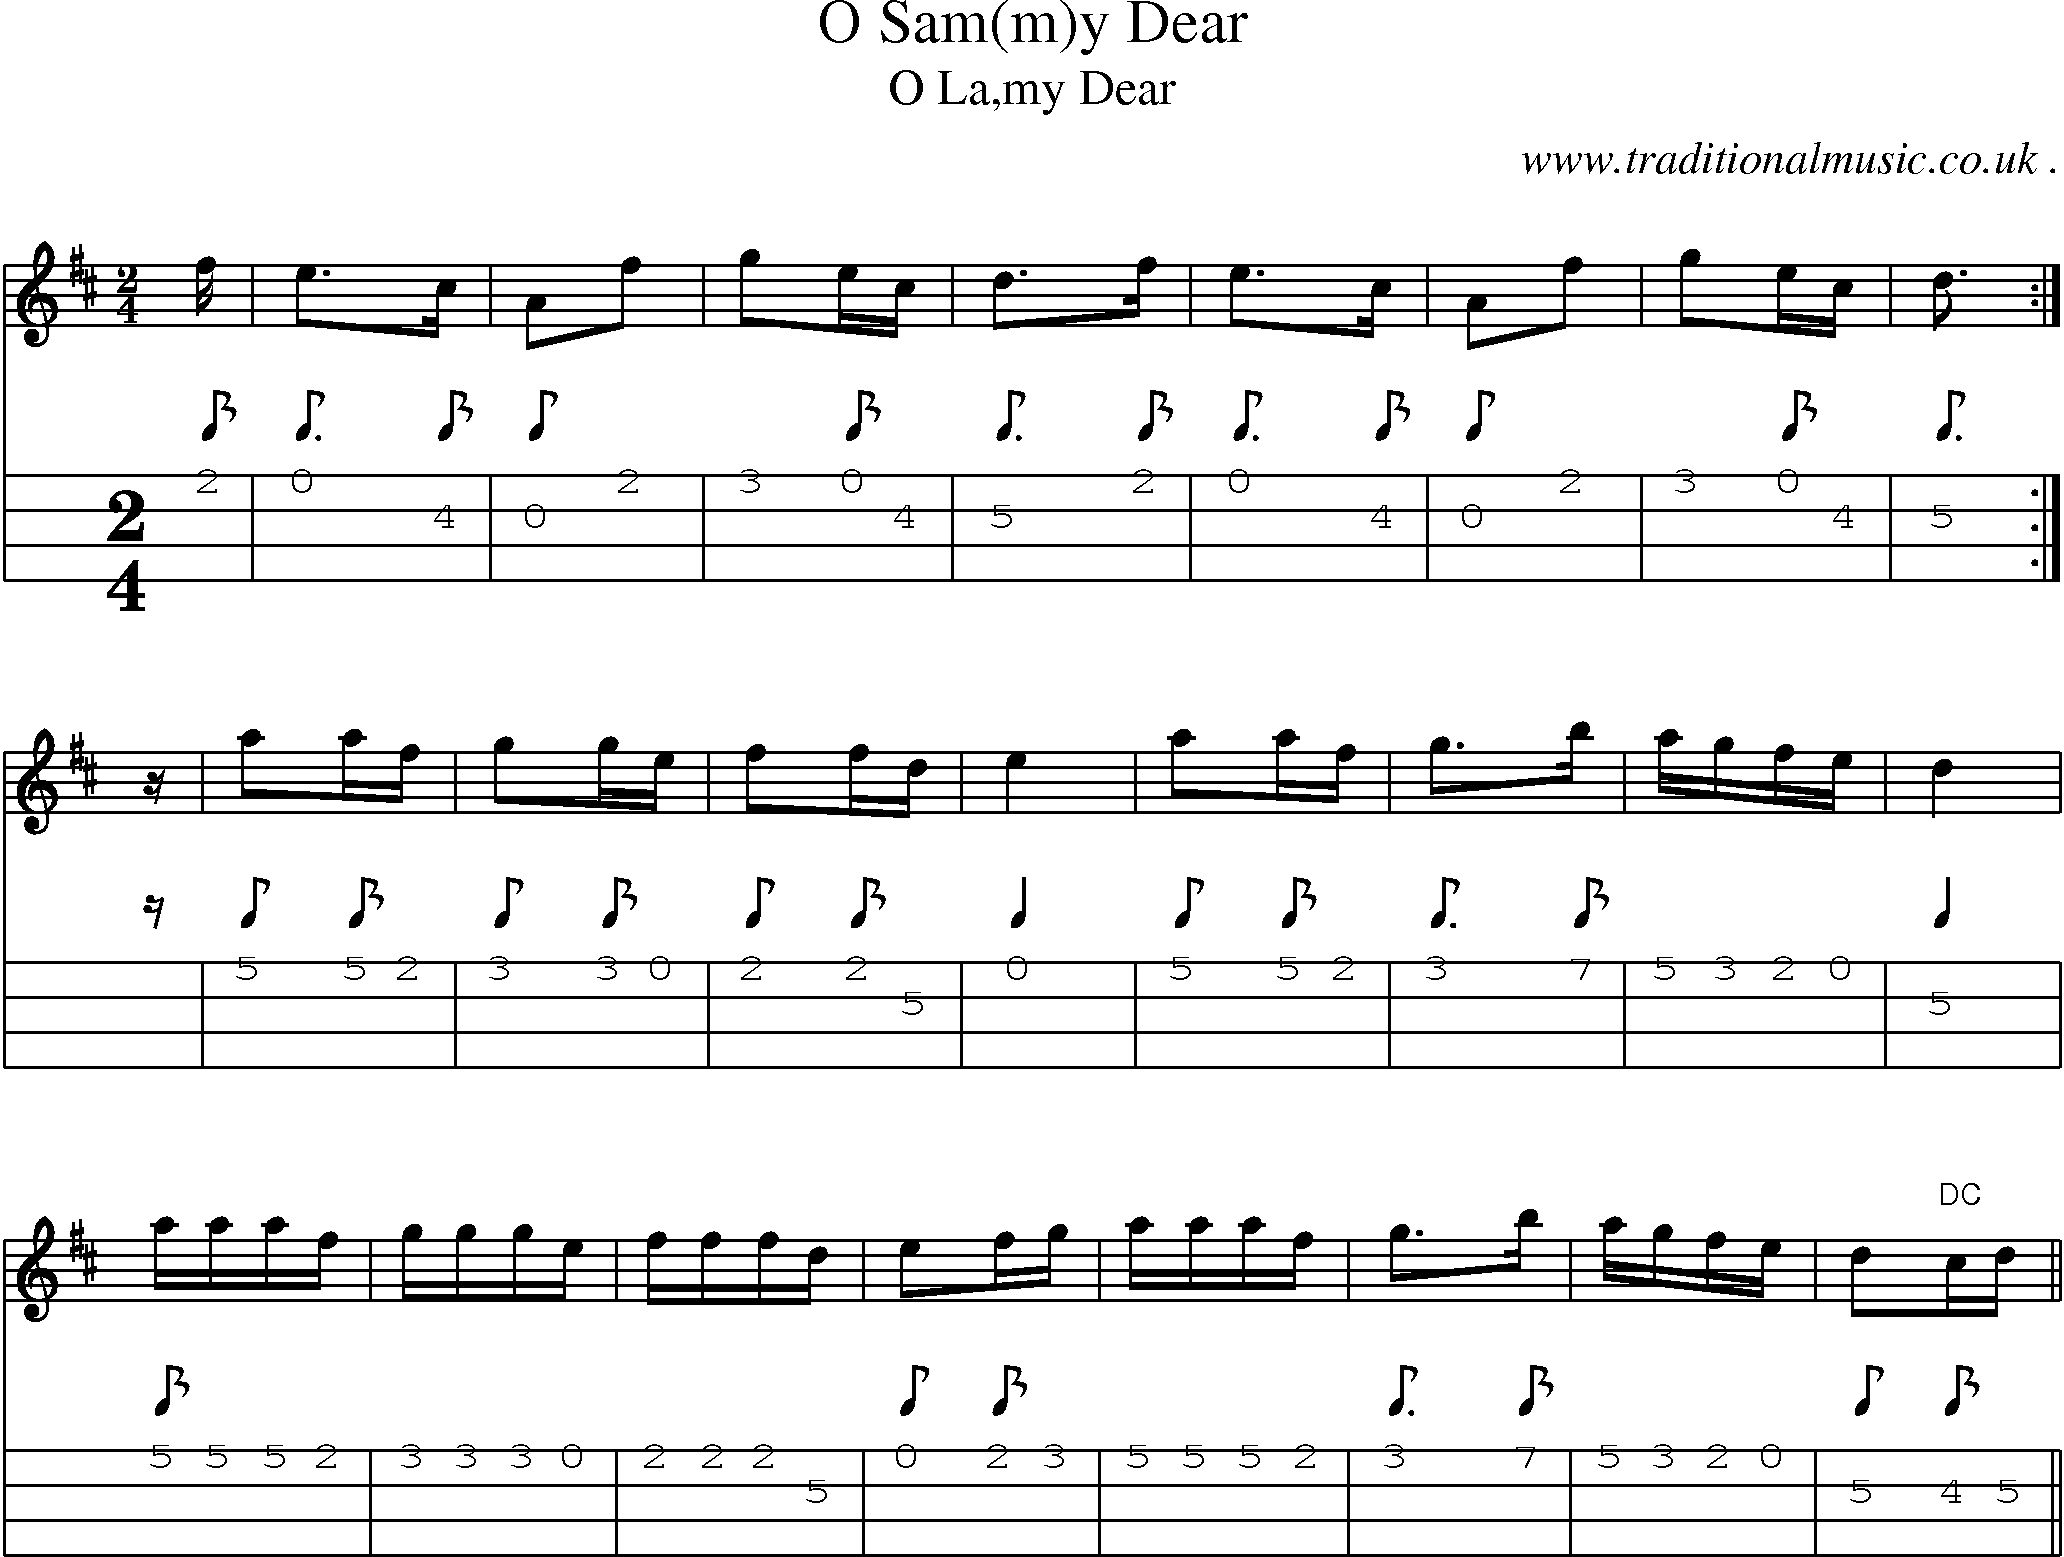 Sheet-Music and Mandolin Tabs for O Sam(m)y Dear